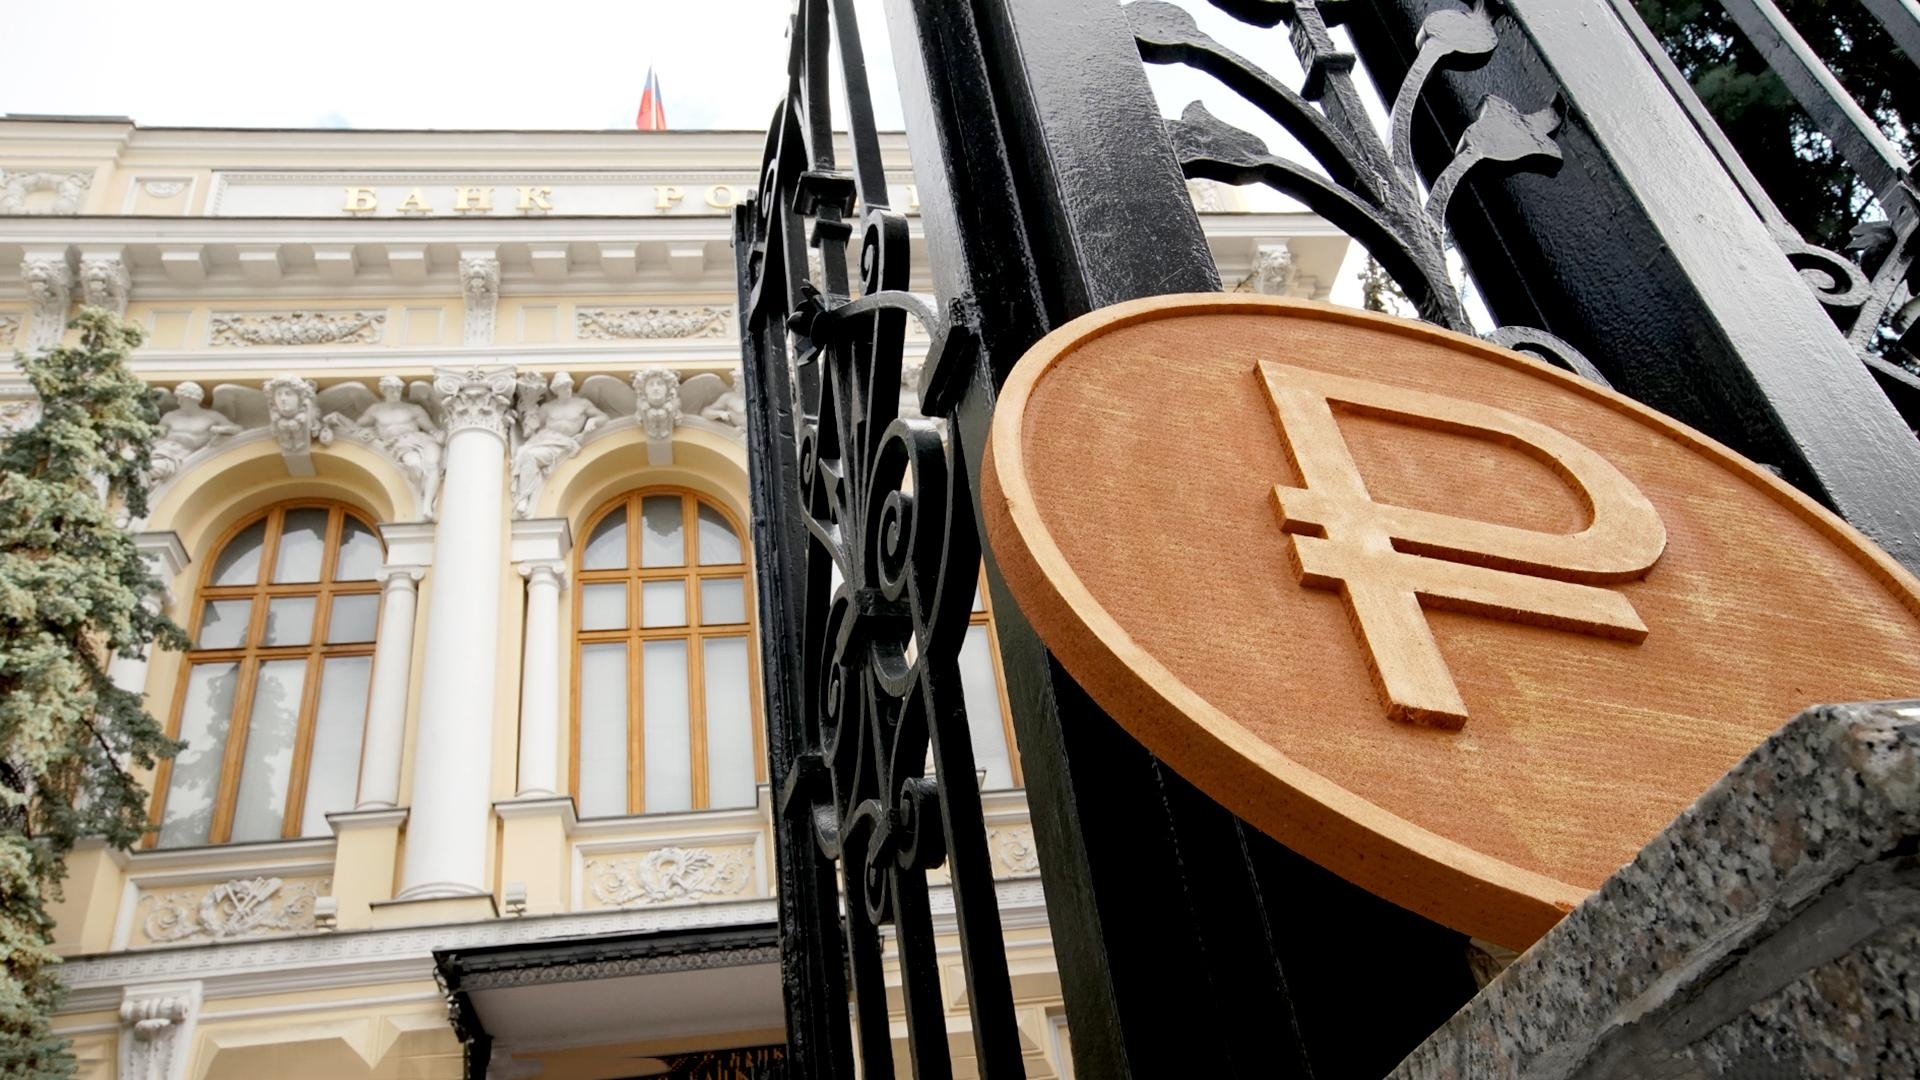 Банки будут согласовывать с ЦБ РФ закупку не только ПО, но и IT-оборудования - законопроект